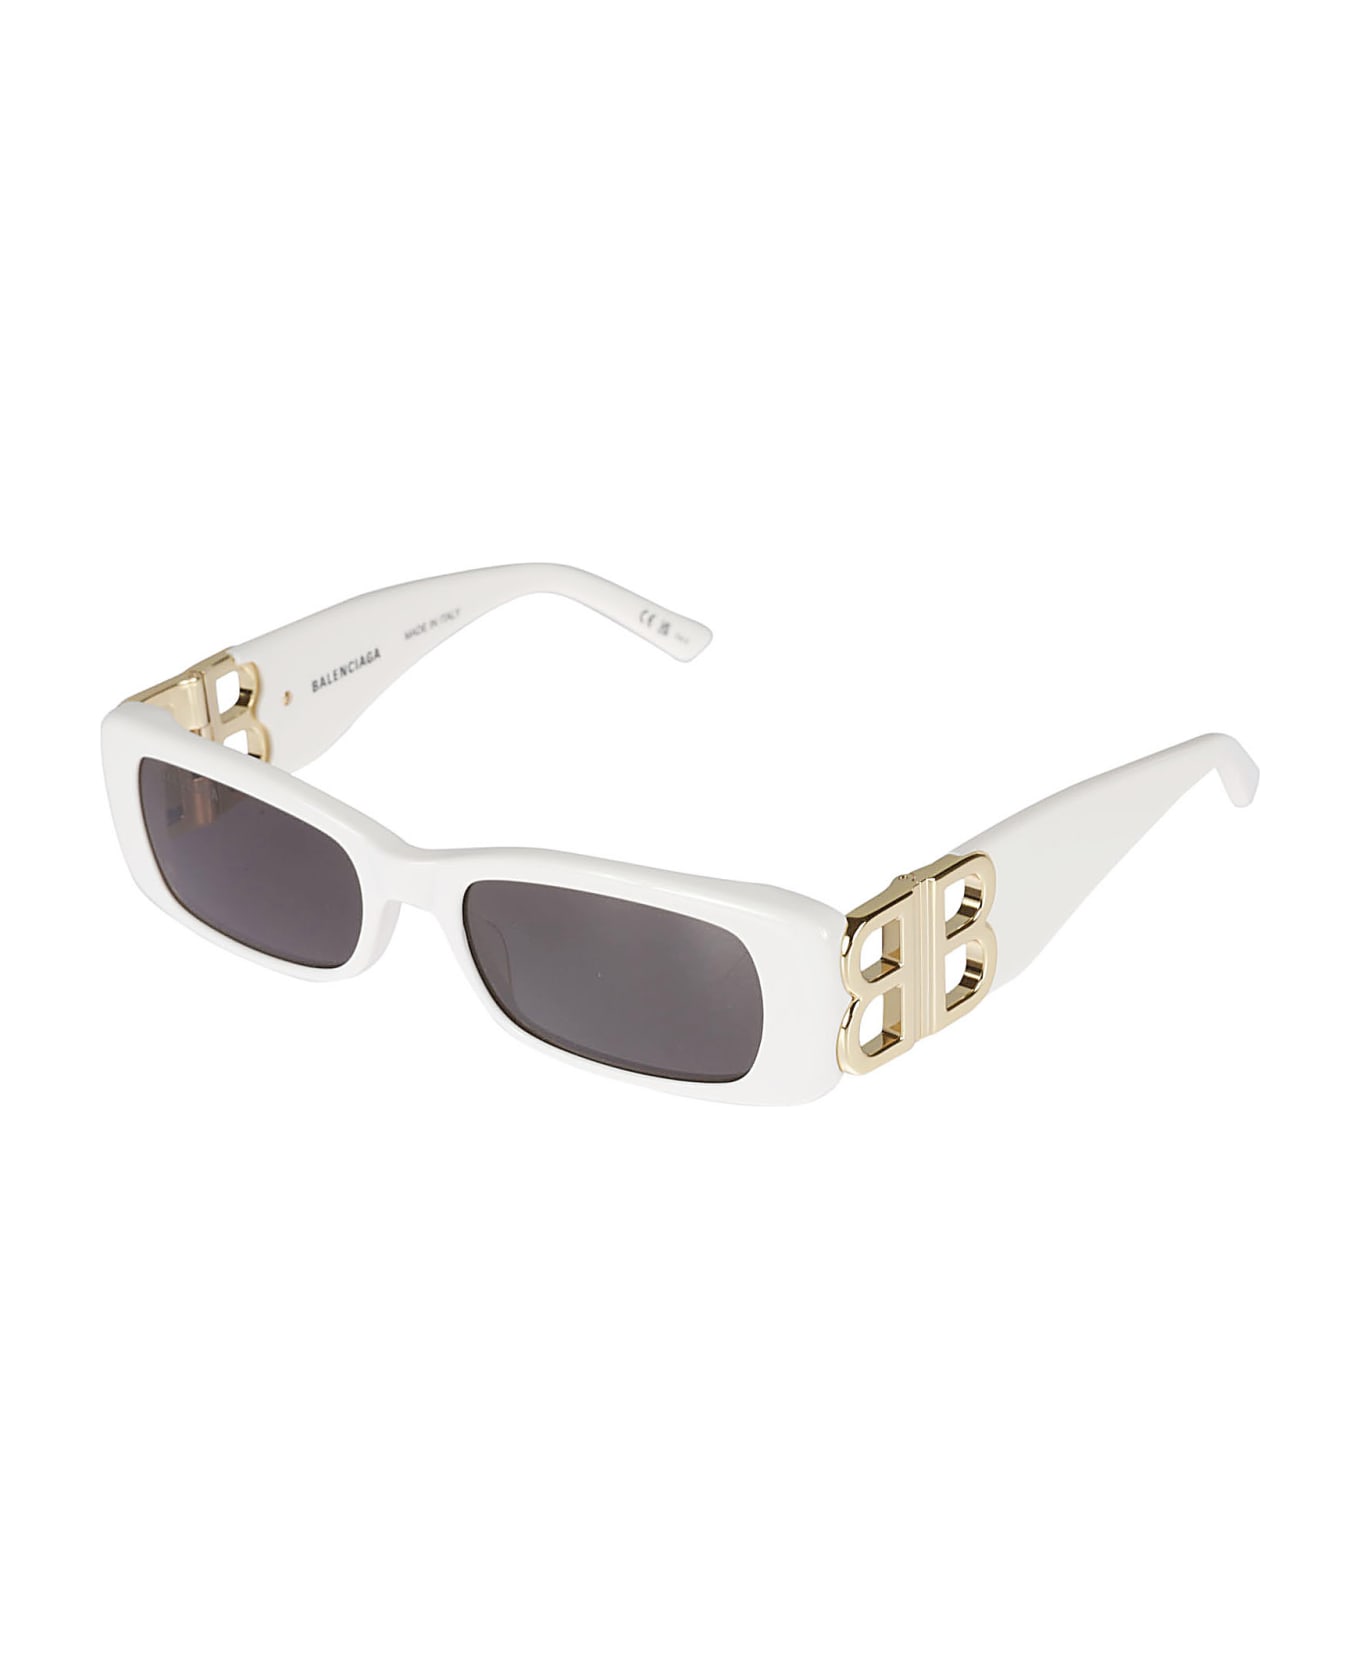 Balenciaga Eyewear Logo Sided Rectangle Sunglasses Slim - Nero